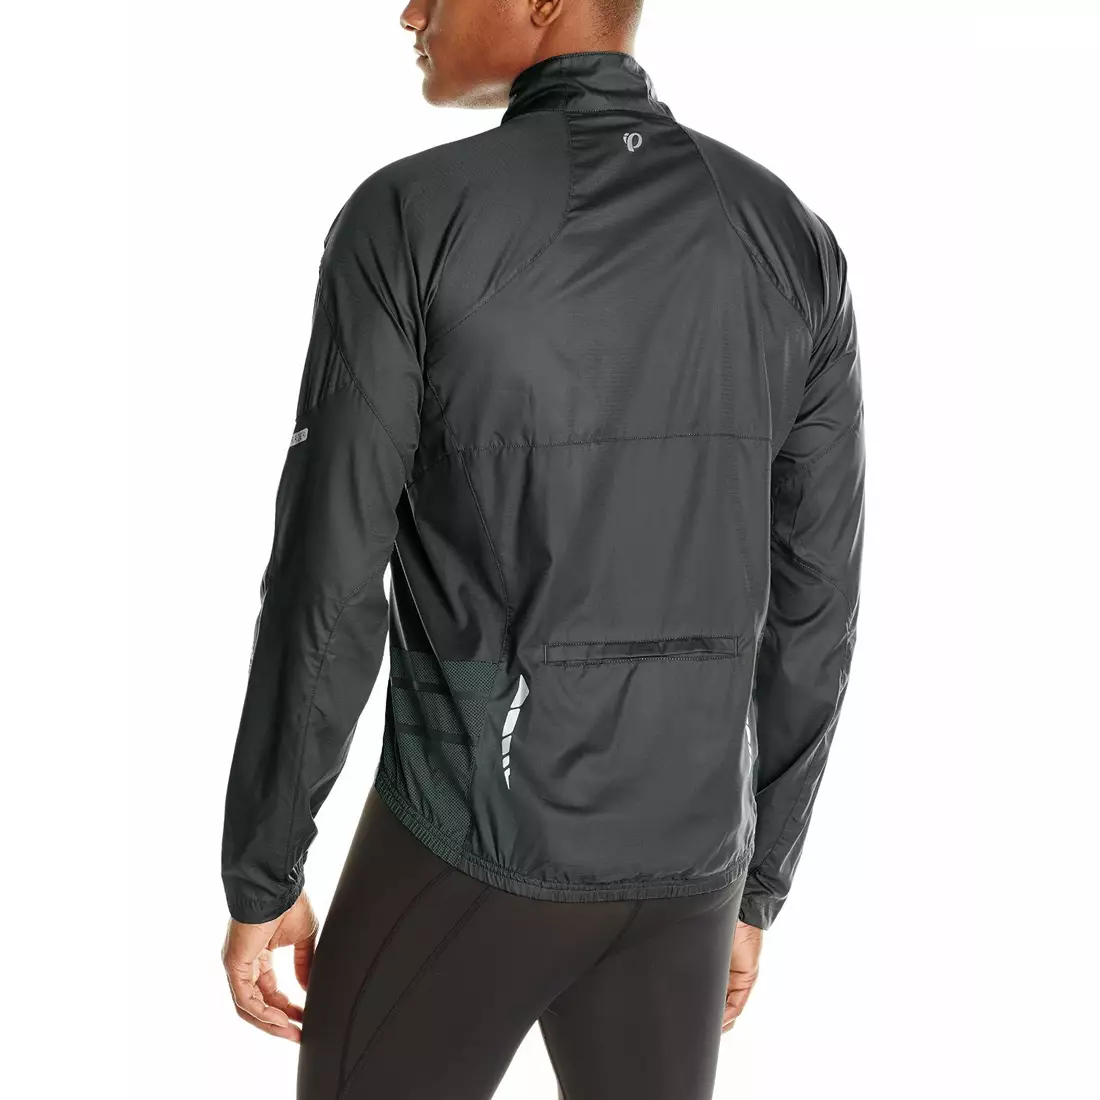 Jachetă pentru bărbați PEARL IZUMI Elite Barrier 11131315-027, culoare: Negru